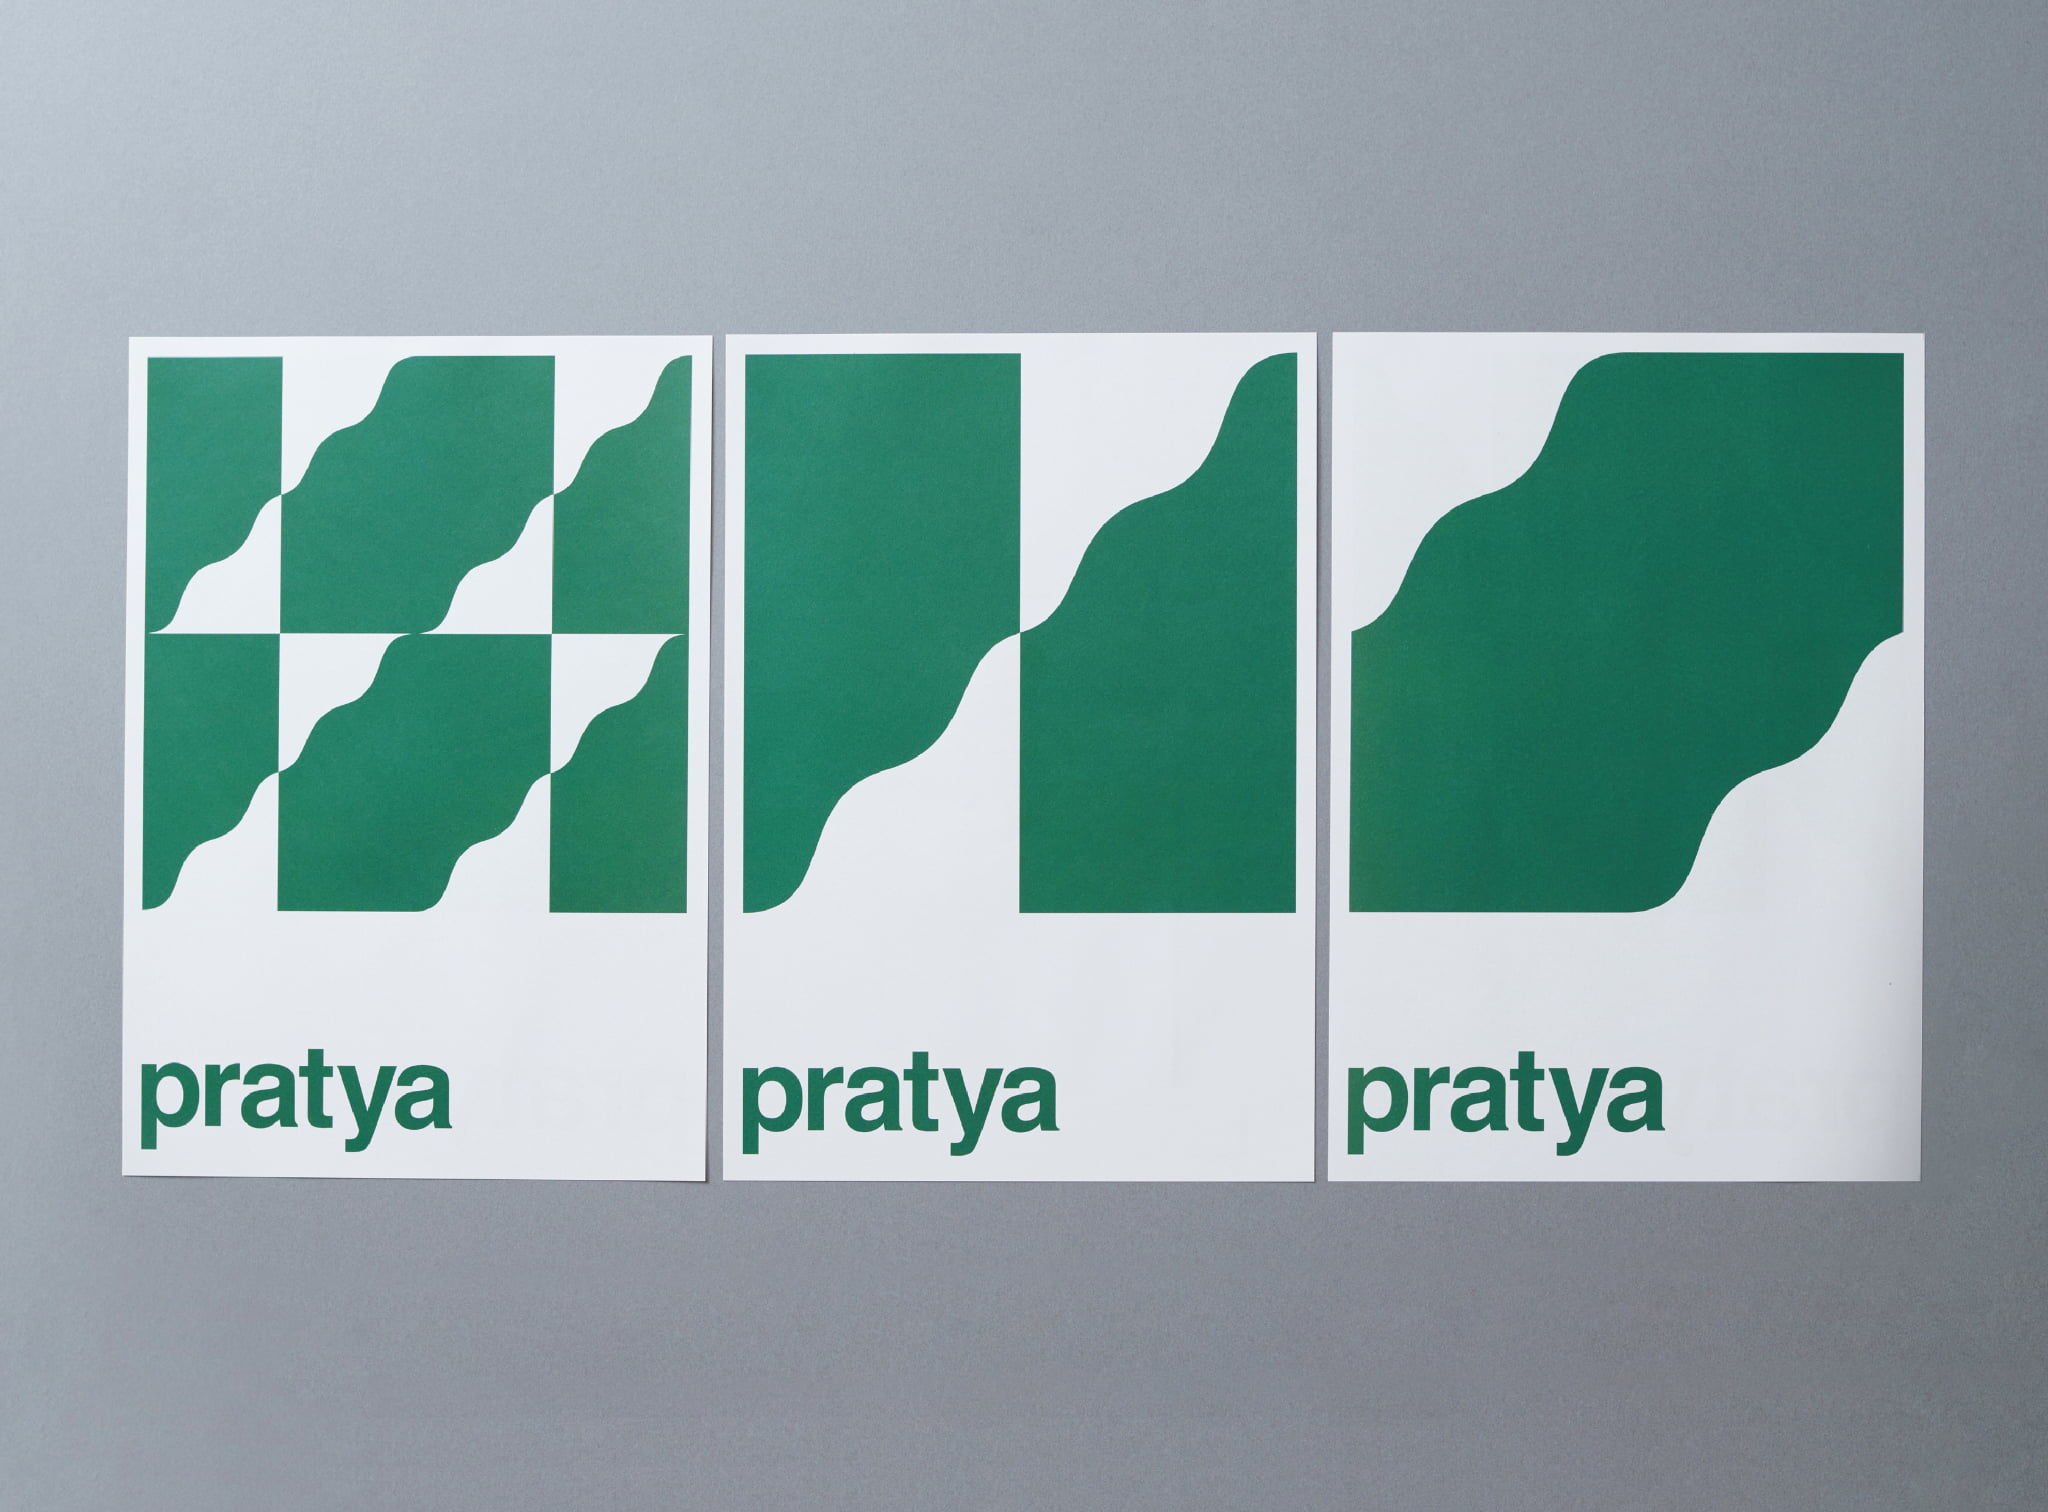 pratya